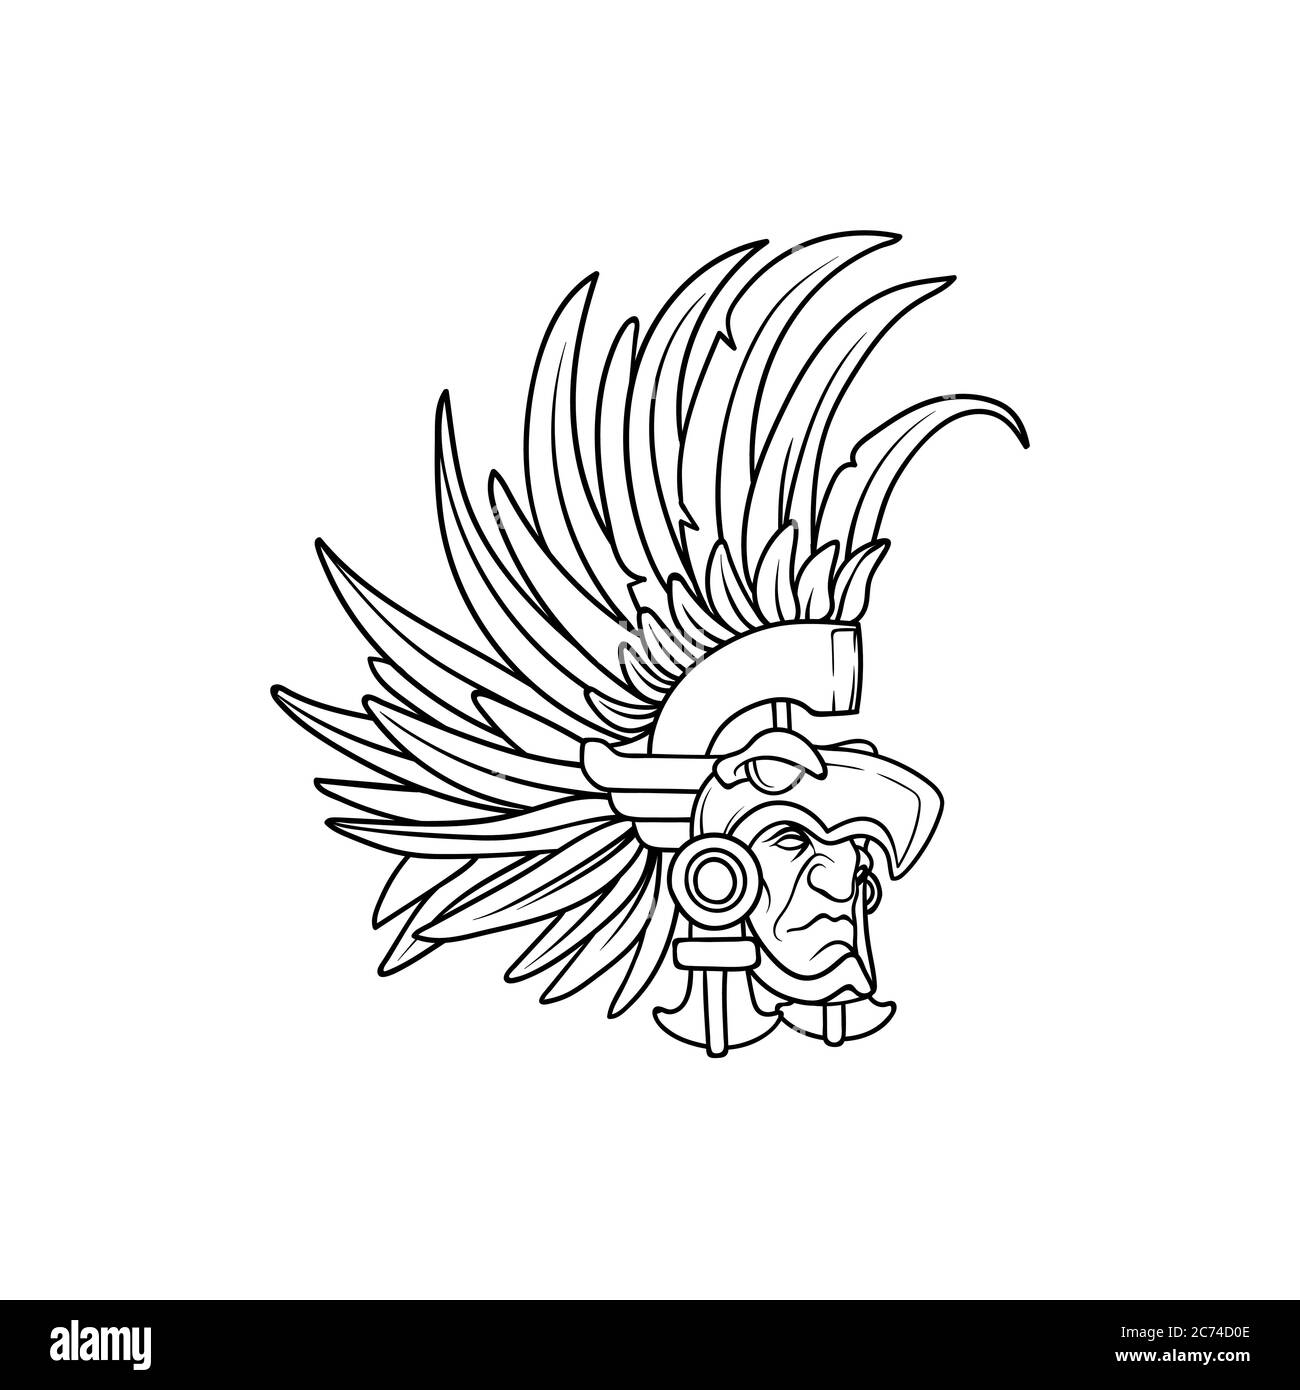 Guerrero azteca Imágenes de stock en blanco y negro - Alamy